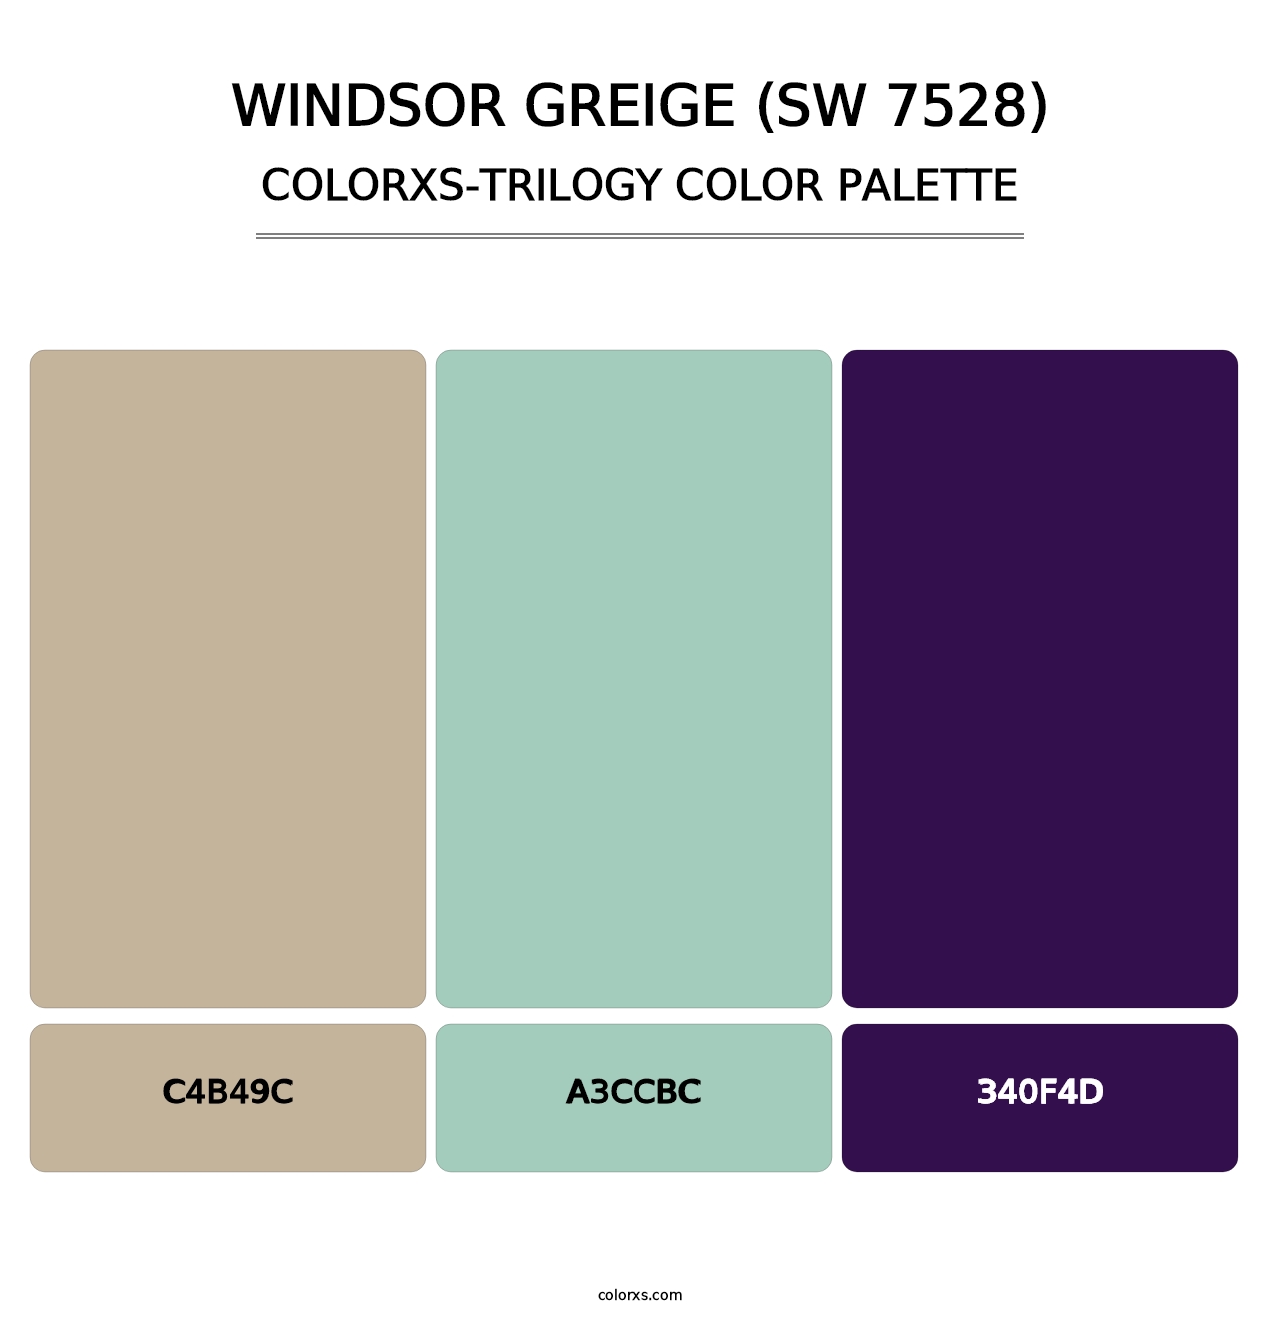 Windsor Greige (SW 7528) - Colorxs Trilogy Palette